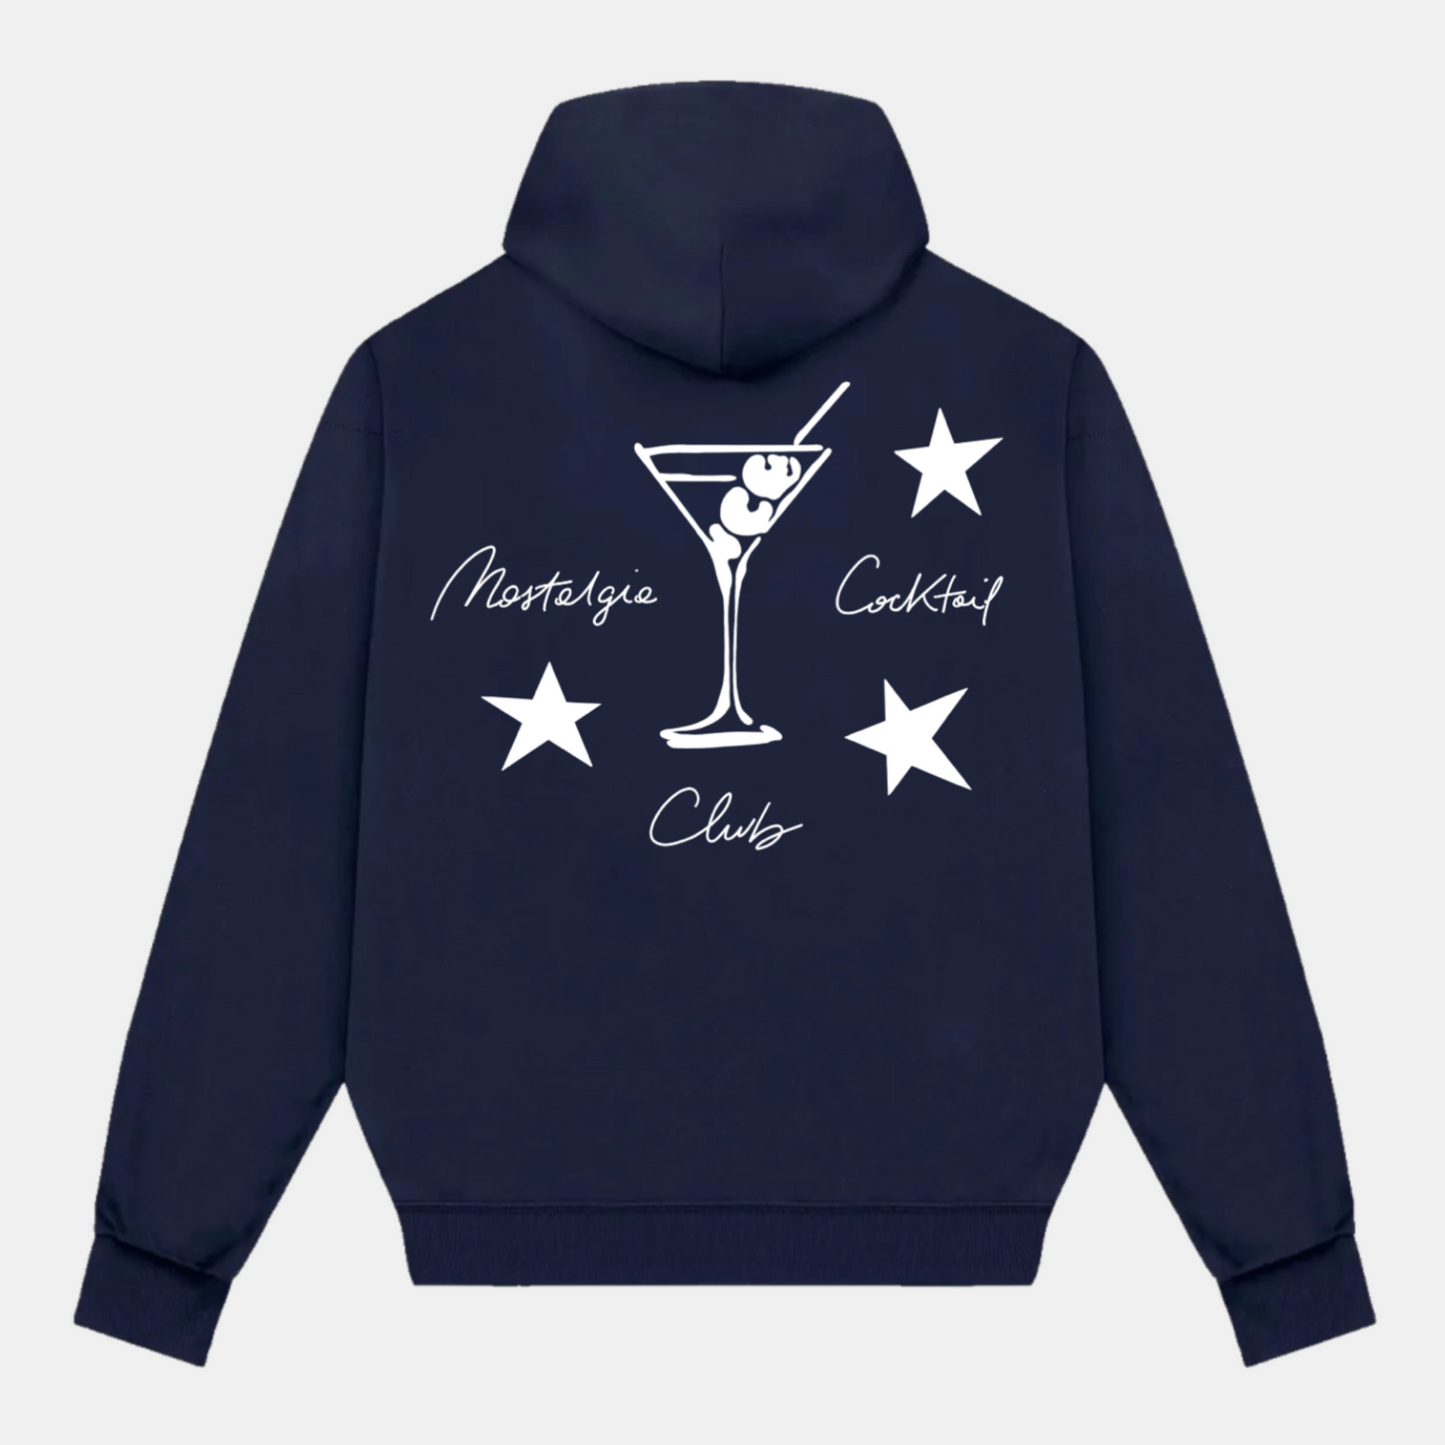 Nostalgia Cocktail Club